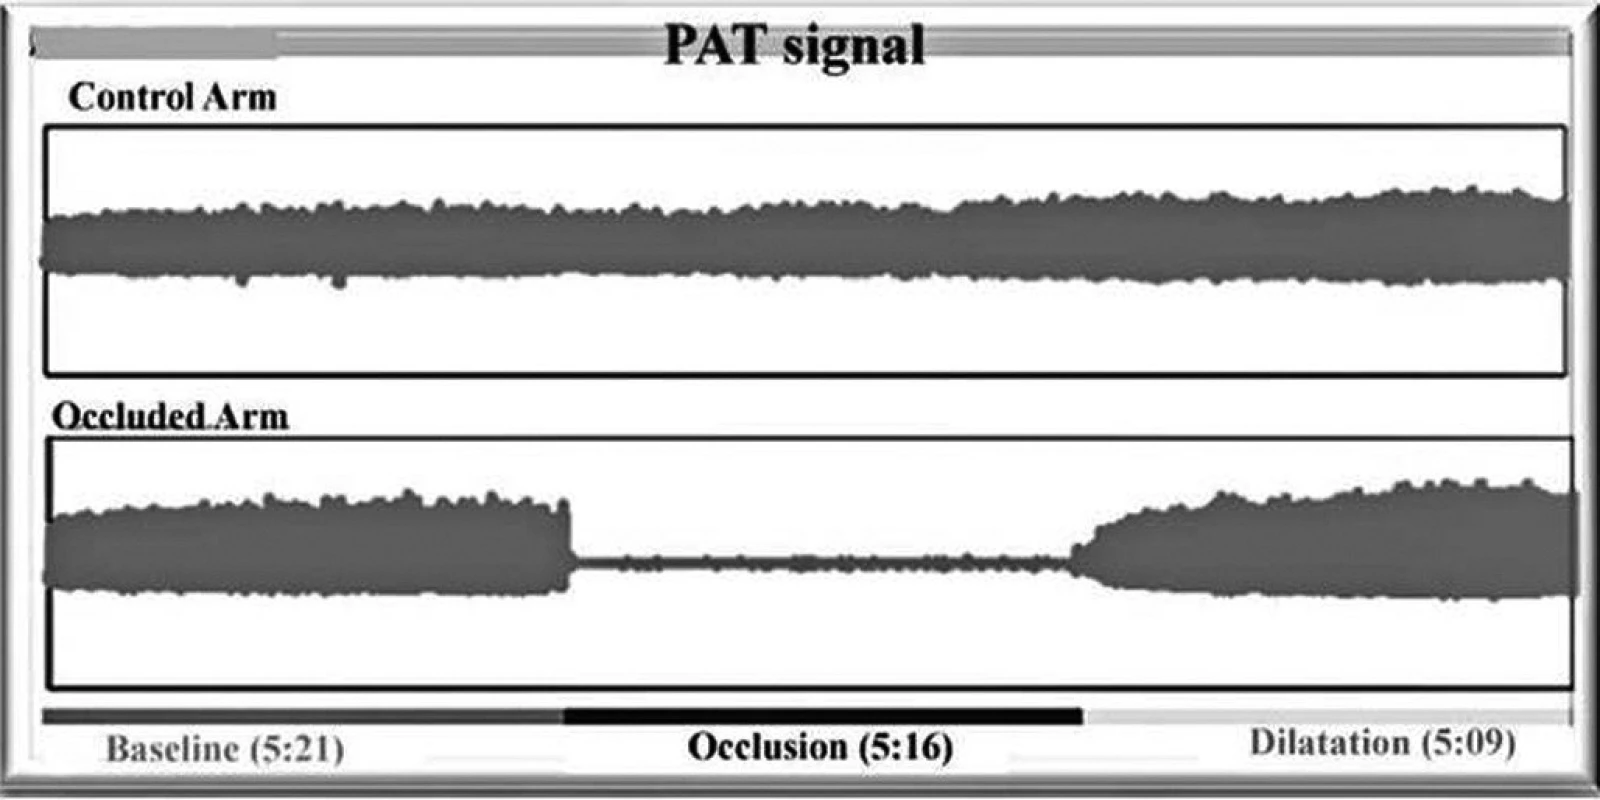 PAT signál v průběhu vyšetření. Na horní křivce záznam na kontrolní paži (control arm) a na dolní křivce záznam na vyšetřované paži (occuluded arm) s patrnou okluzí (occlusion) a následnou reaktivní hyperemií (RHI) – dilatation.